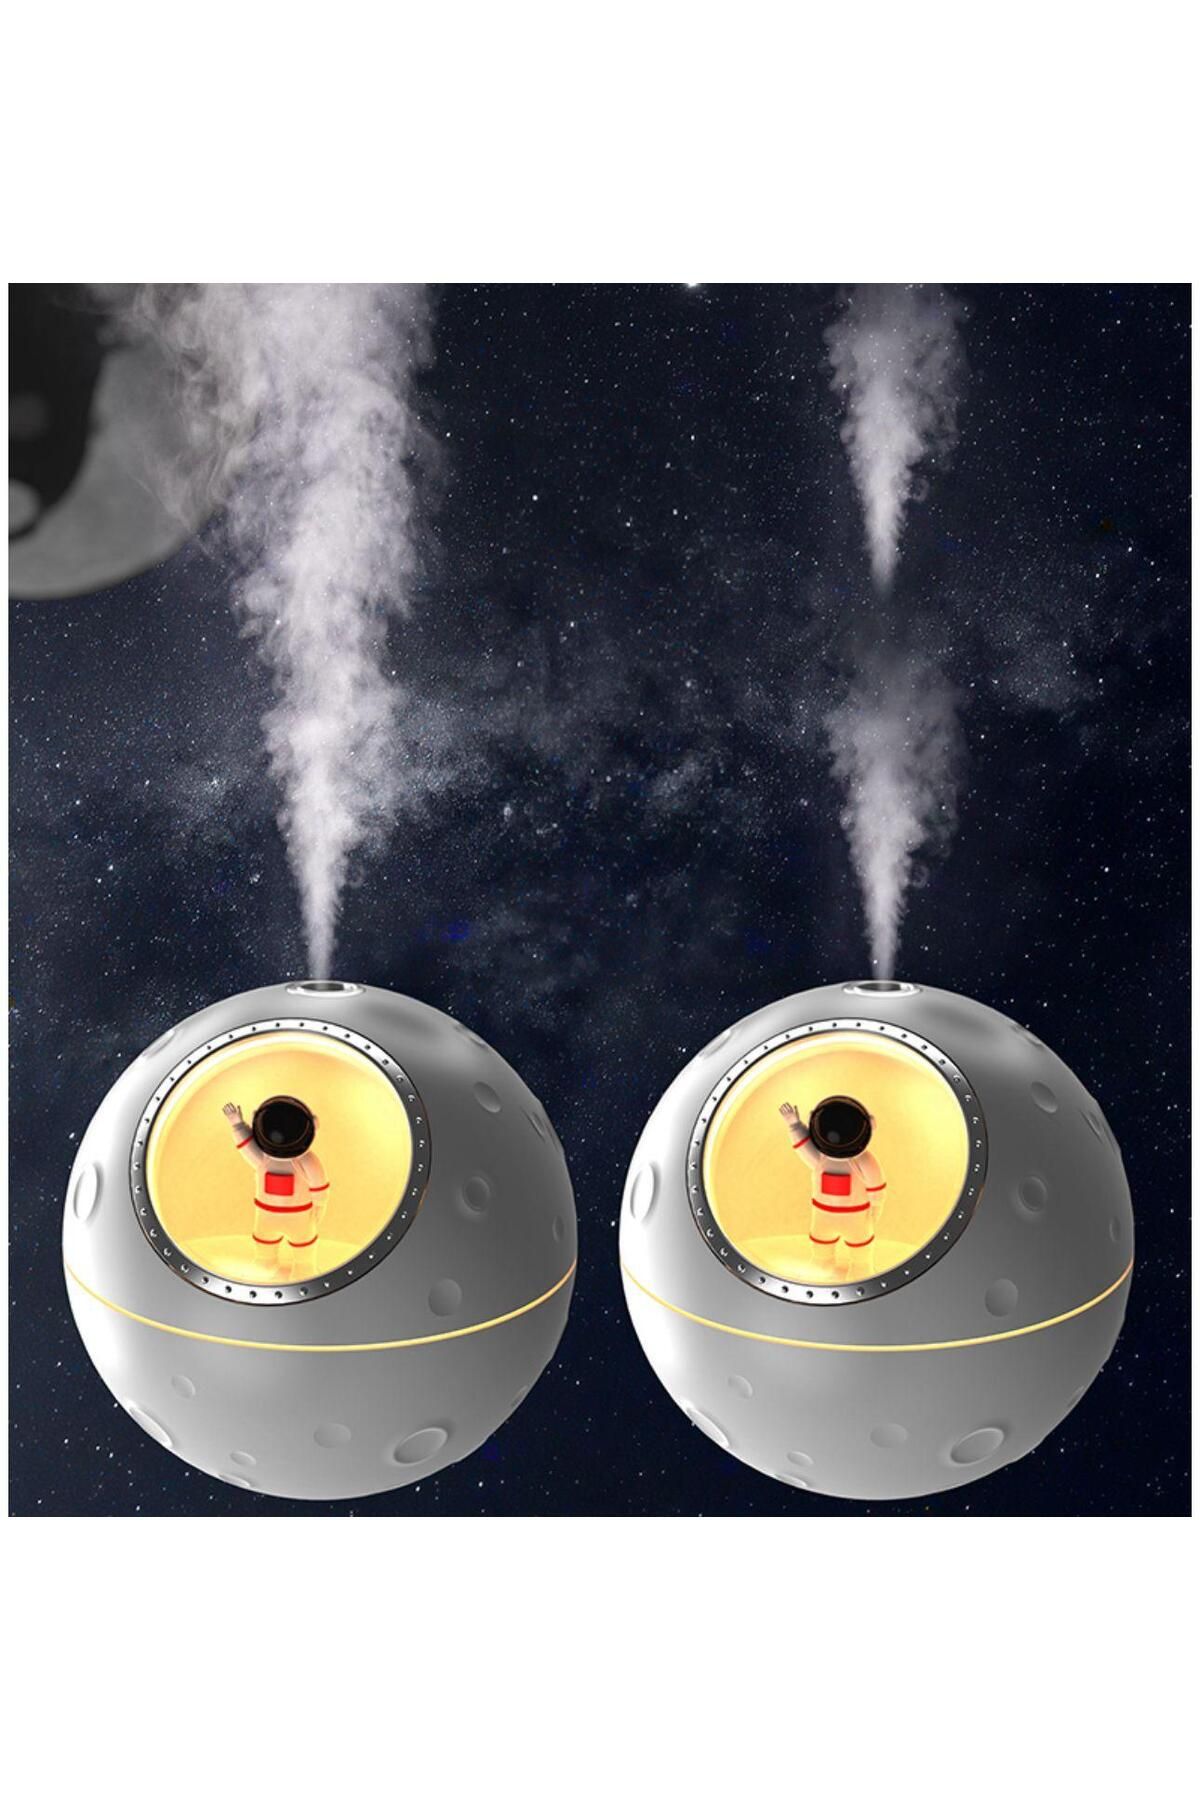 HENY H2o humifidier 300 ml hava nemlendirici buhar makinası aroma difüzörü